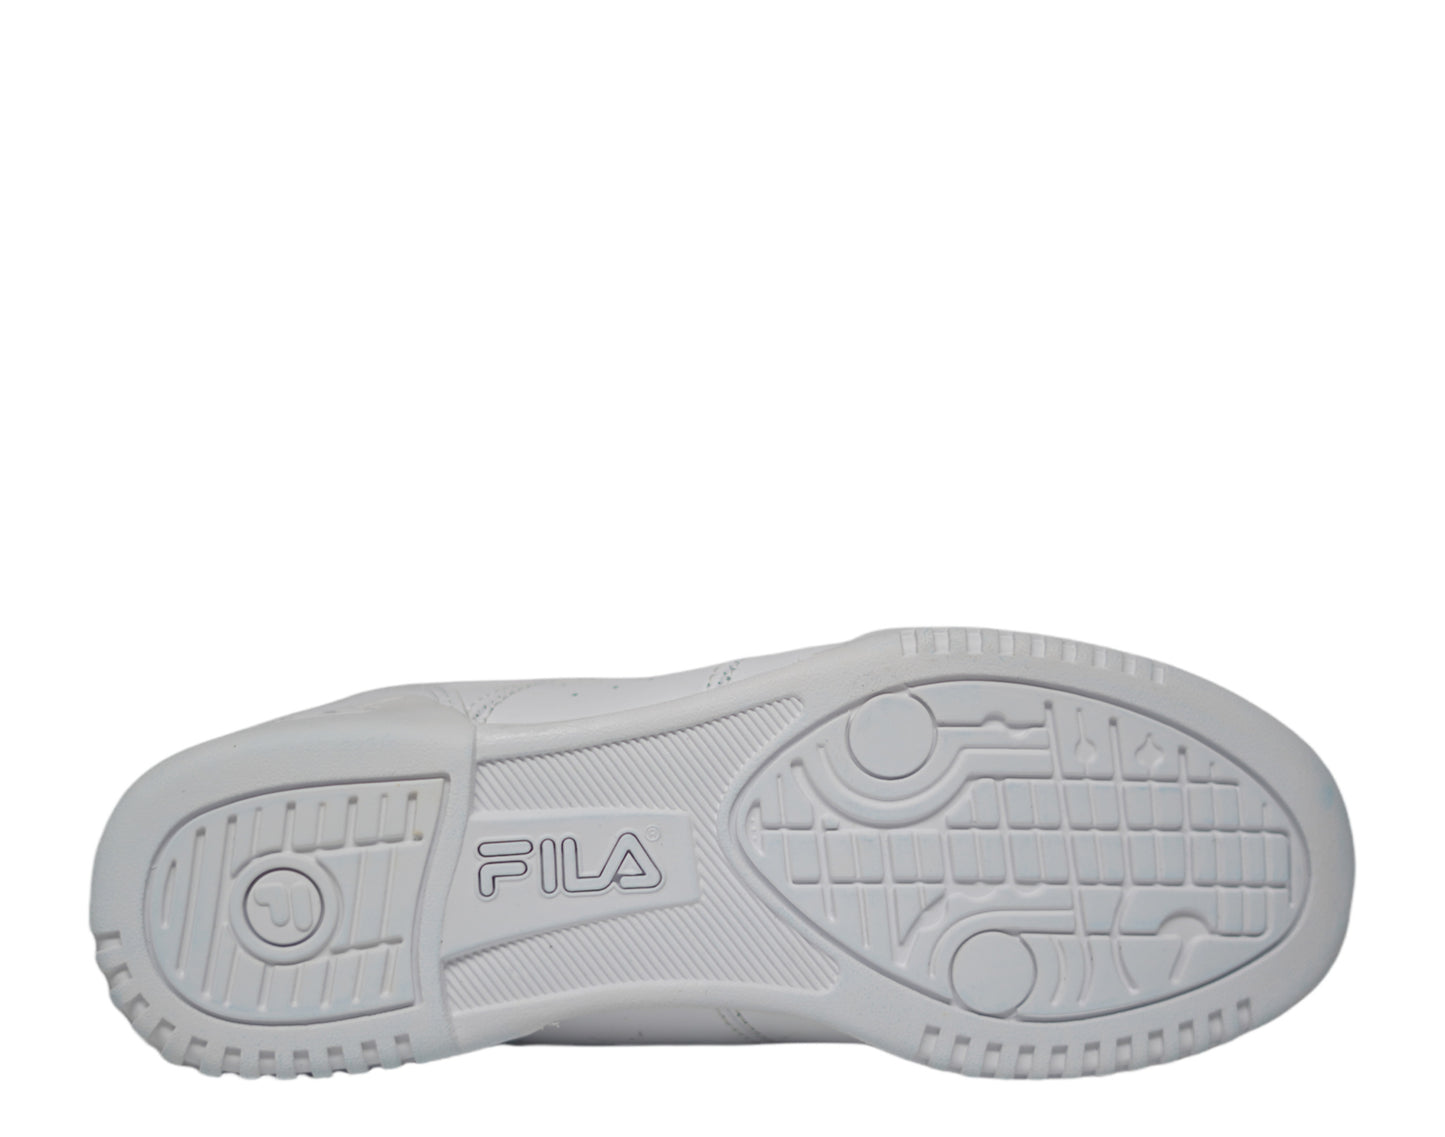 Fila Original Fitness Men's Casual Shoes